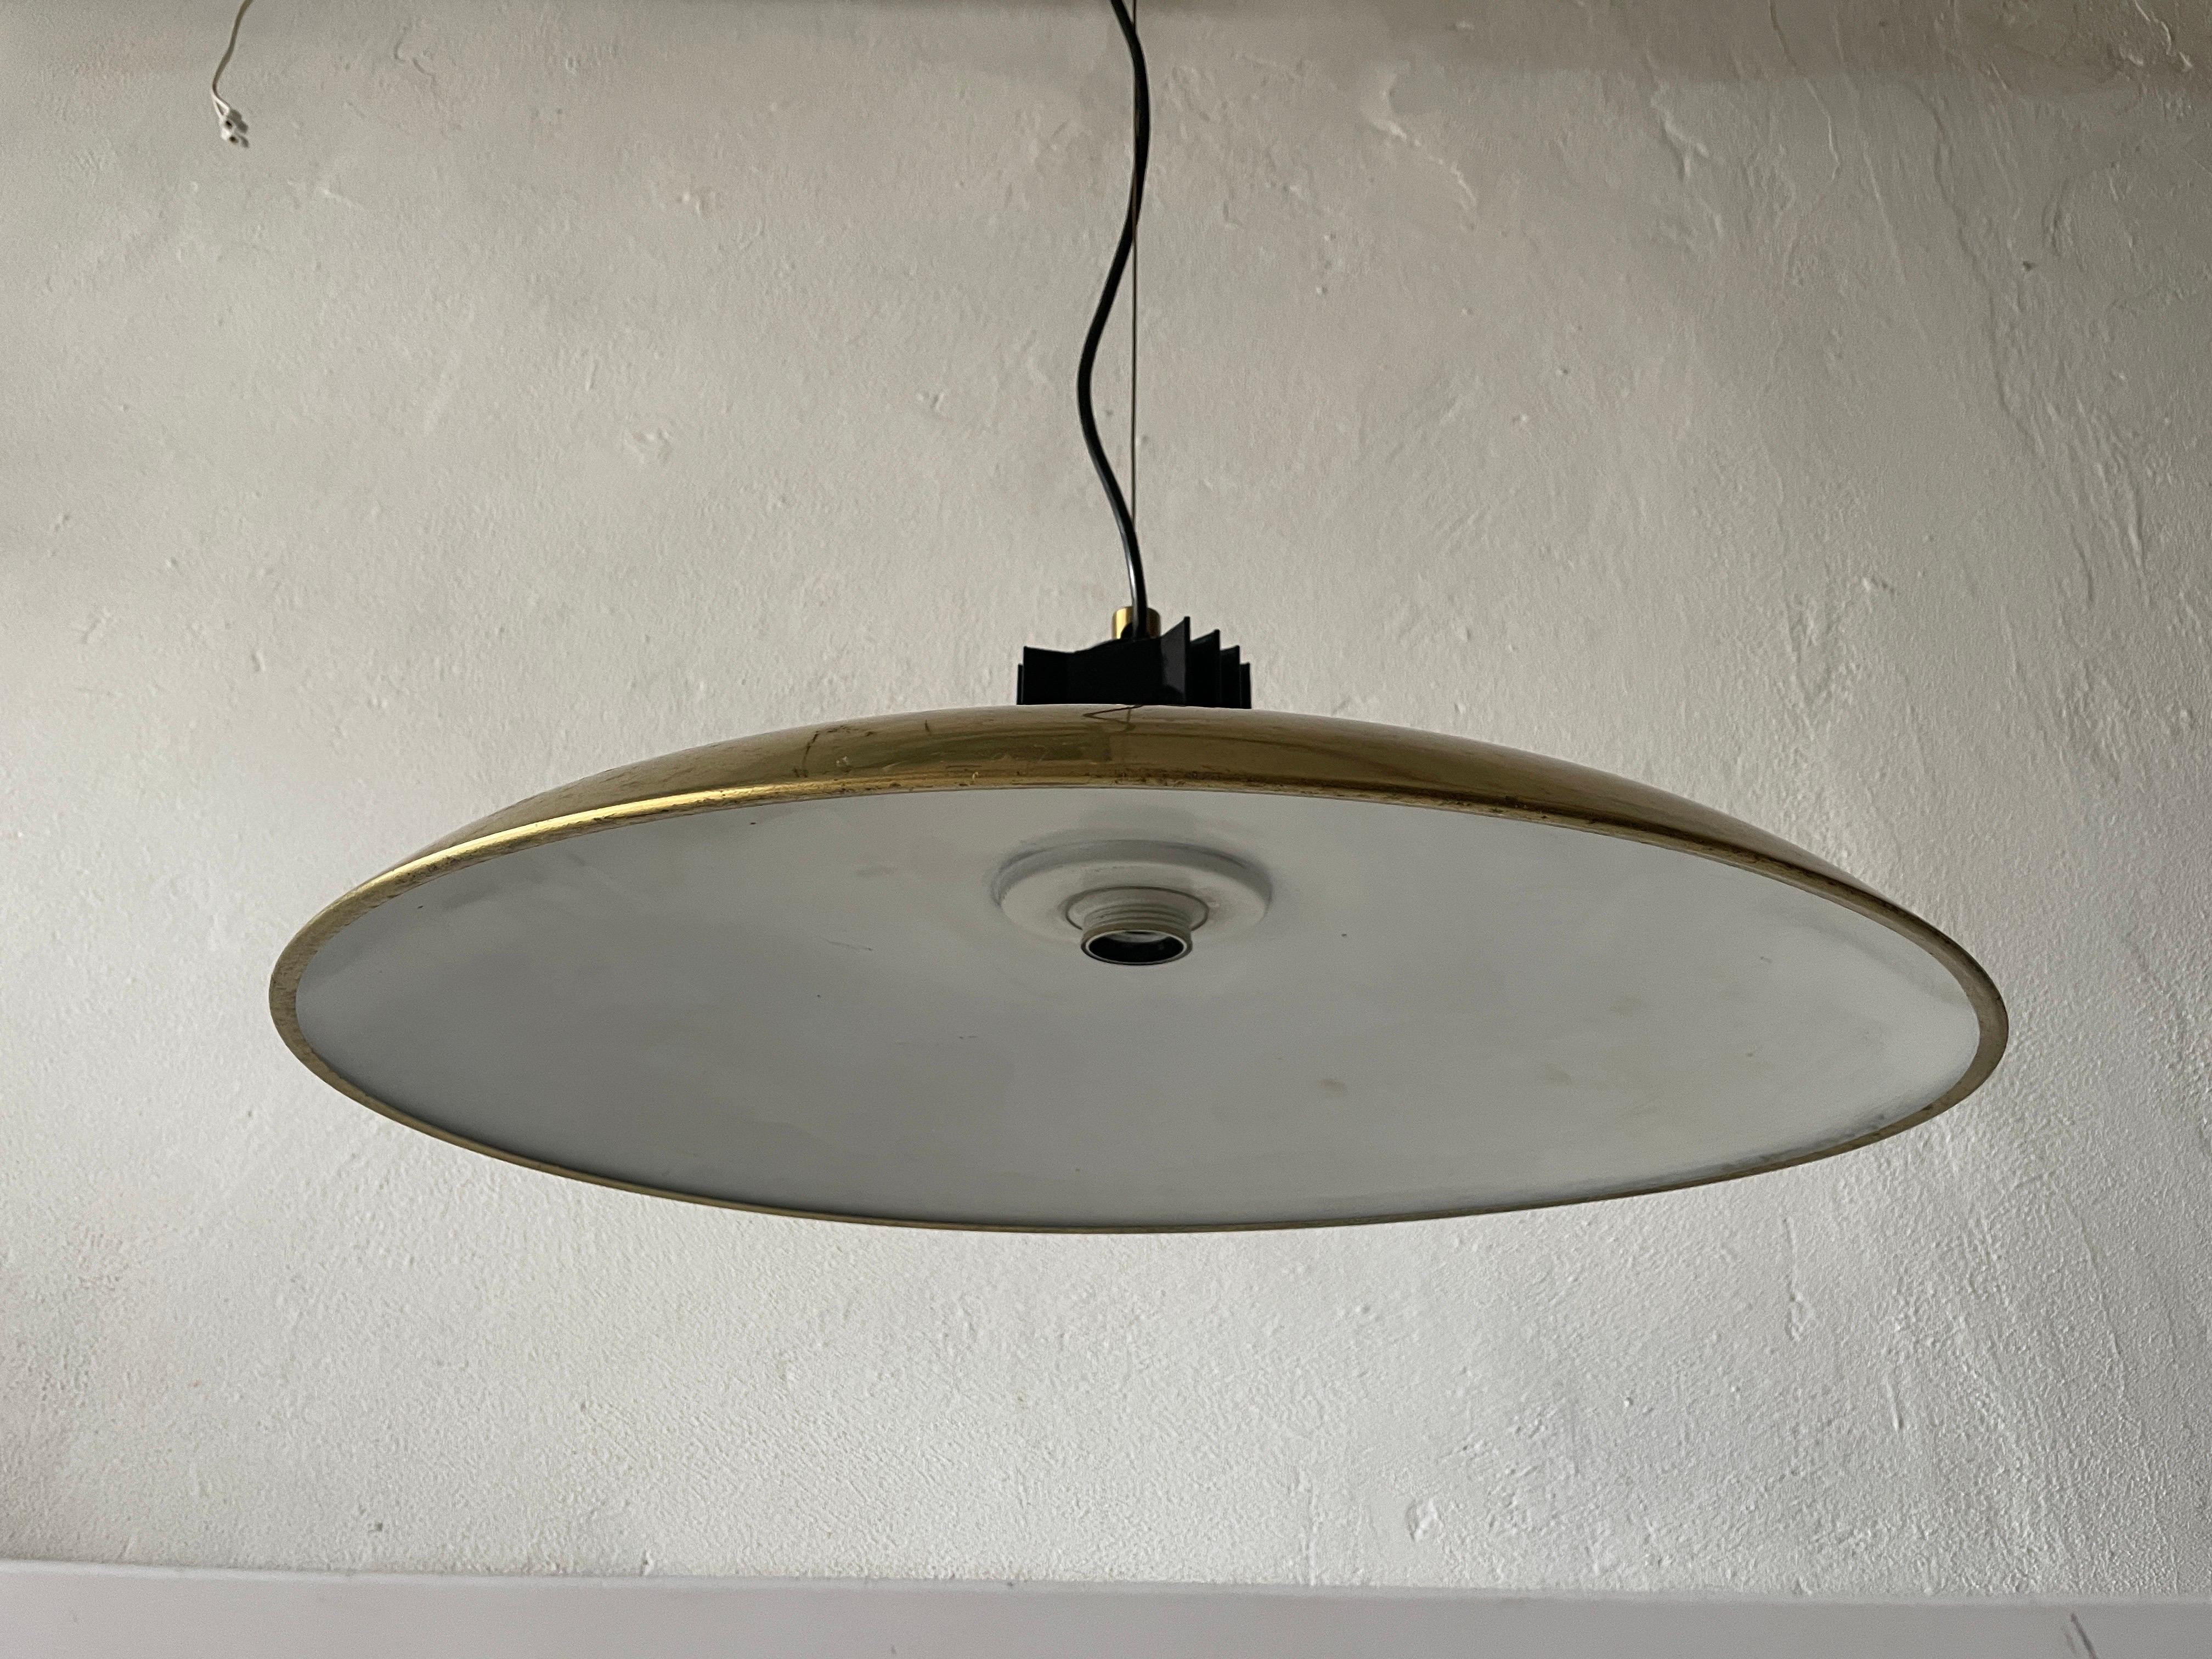 Lampe à suspension italienne XL en laiton mi-siècle moderne, années 1960, Italie

Cette lampe fonctionne avec une ampoule E27.

Mesures : 
Hauteur : 110 cm
Diamètre et hauteur de l'abat-jour : 56 et 20 cm

